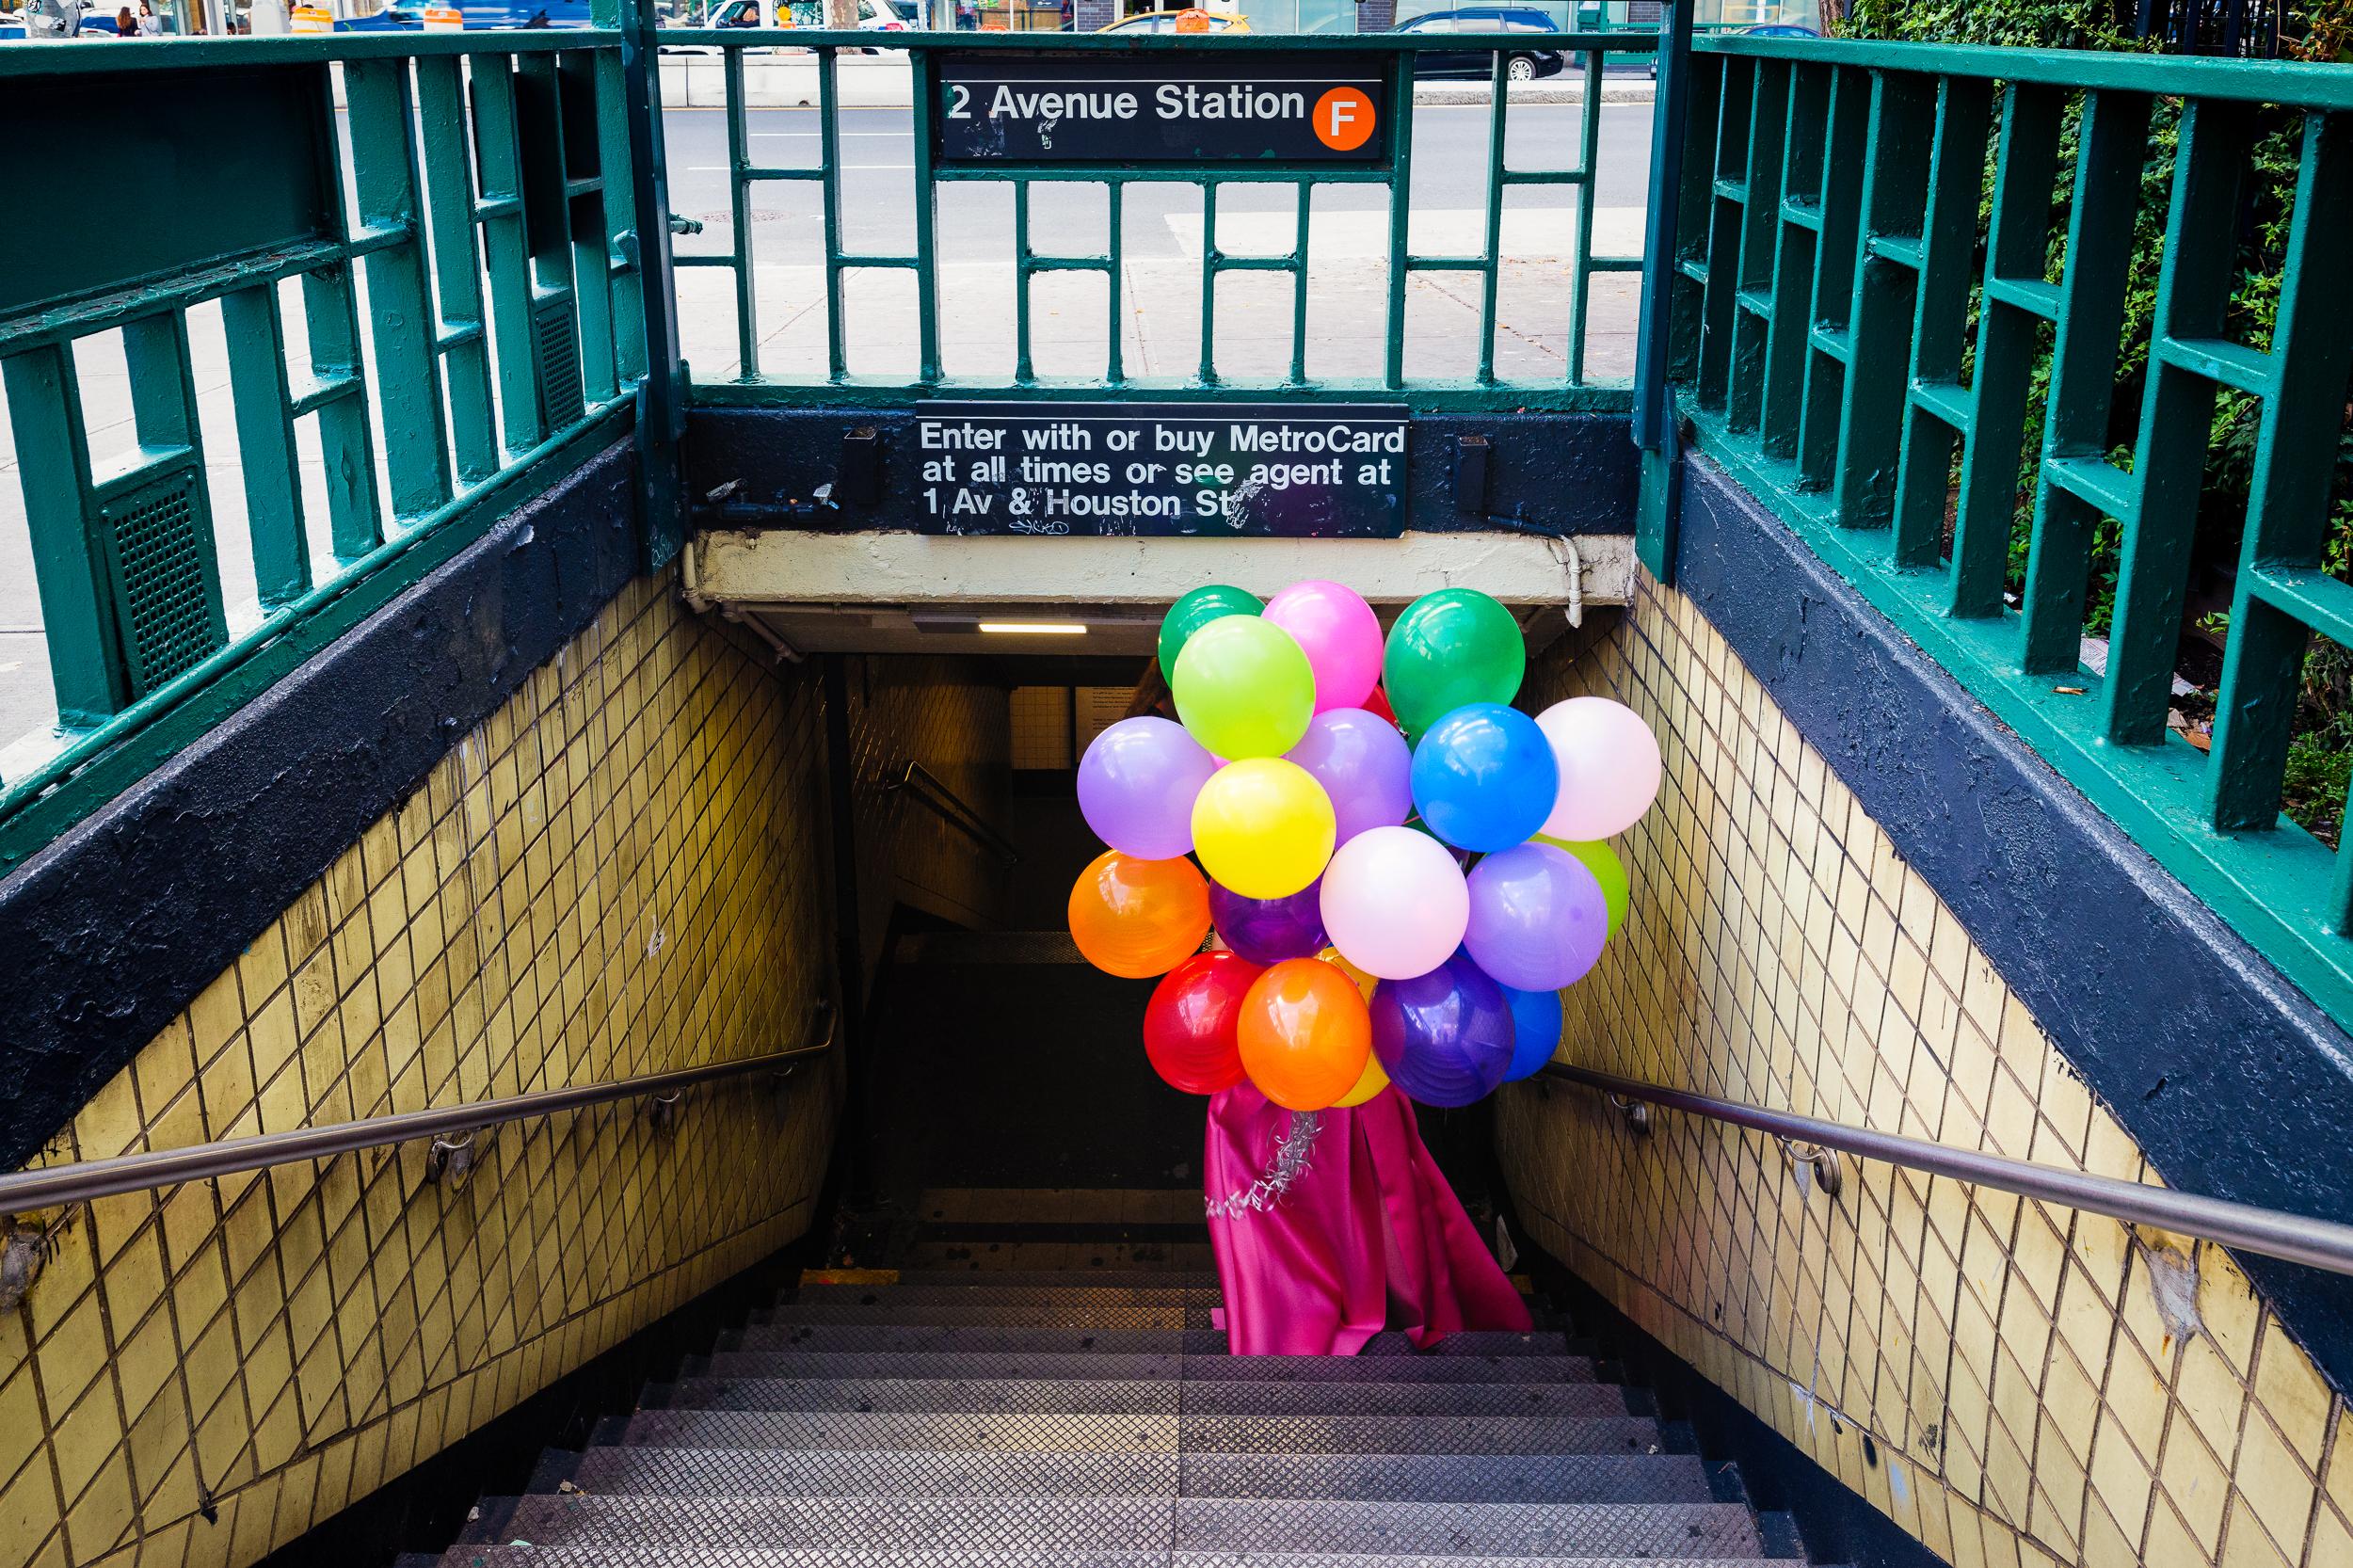 Peter Mendelson Color Photograph - "Subway Surprise, " Contemporary Photograph, 40" x 60"